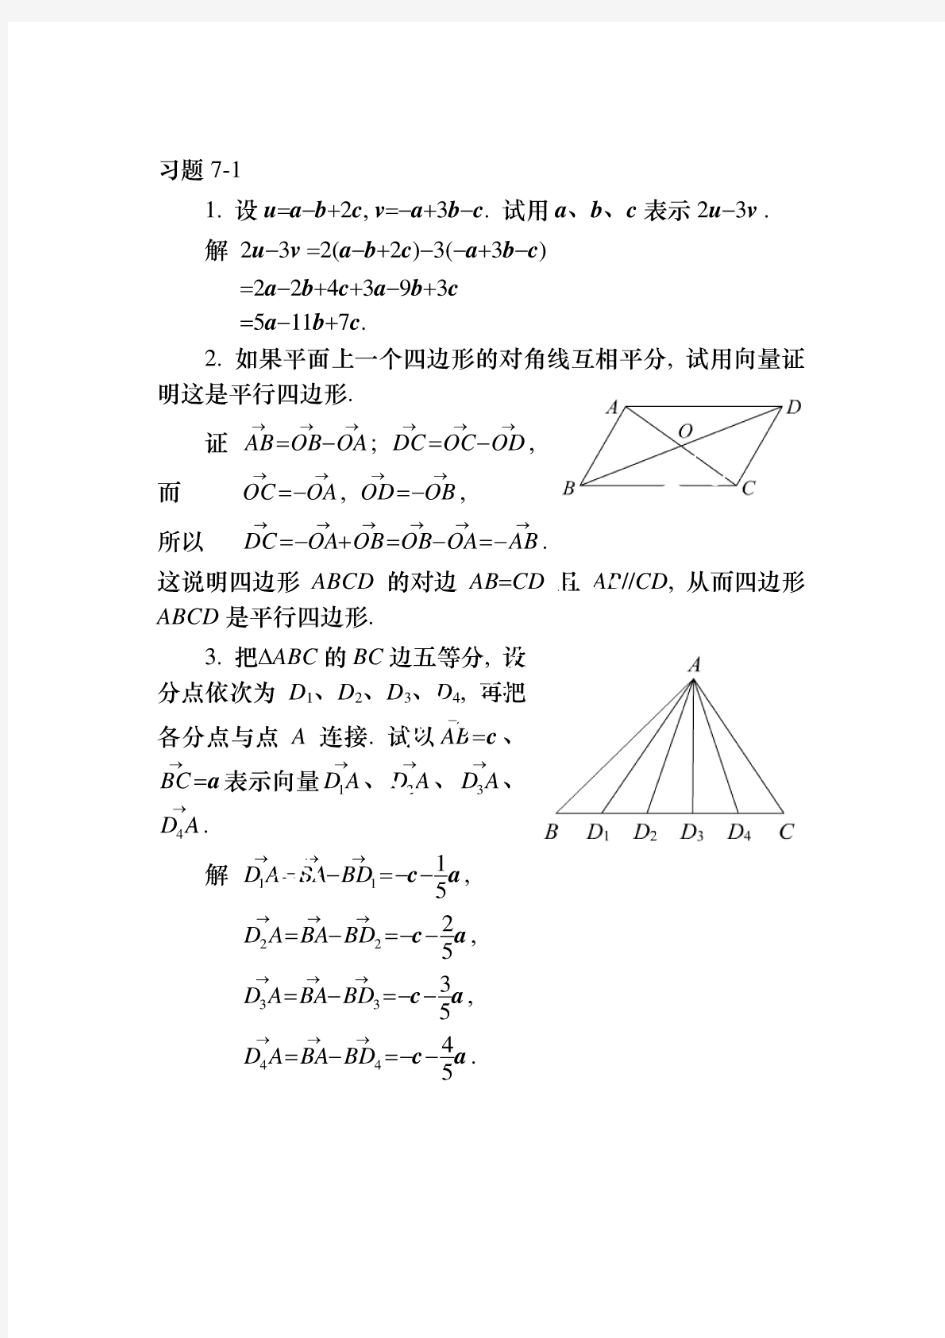 高等数学同济第六版上_答案解析第七章(PDF)